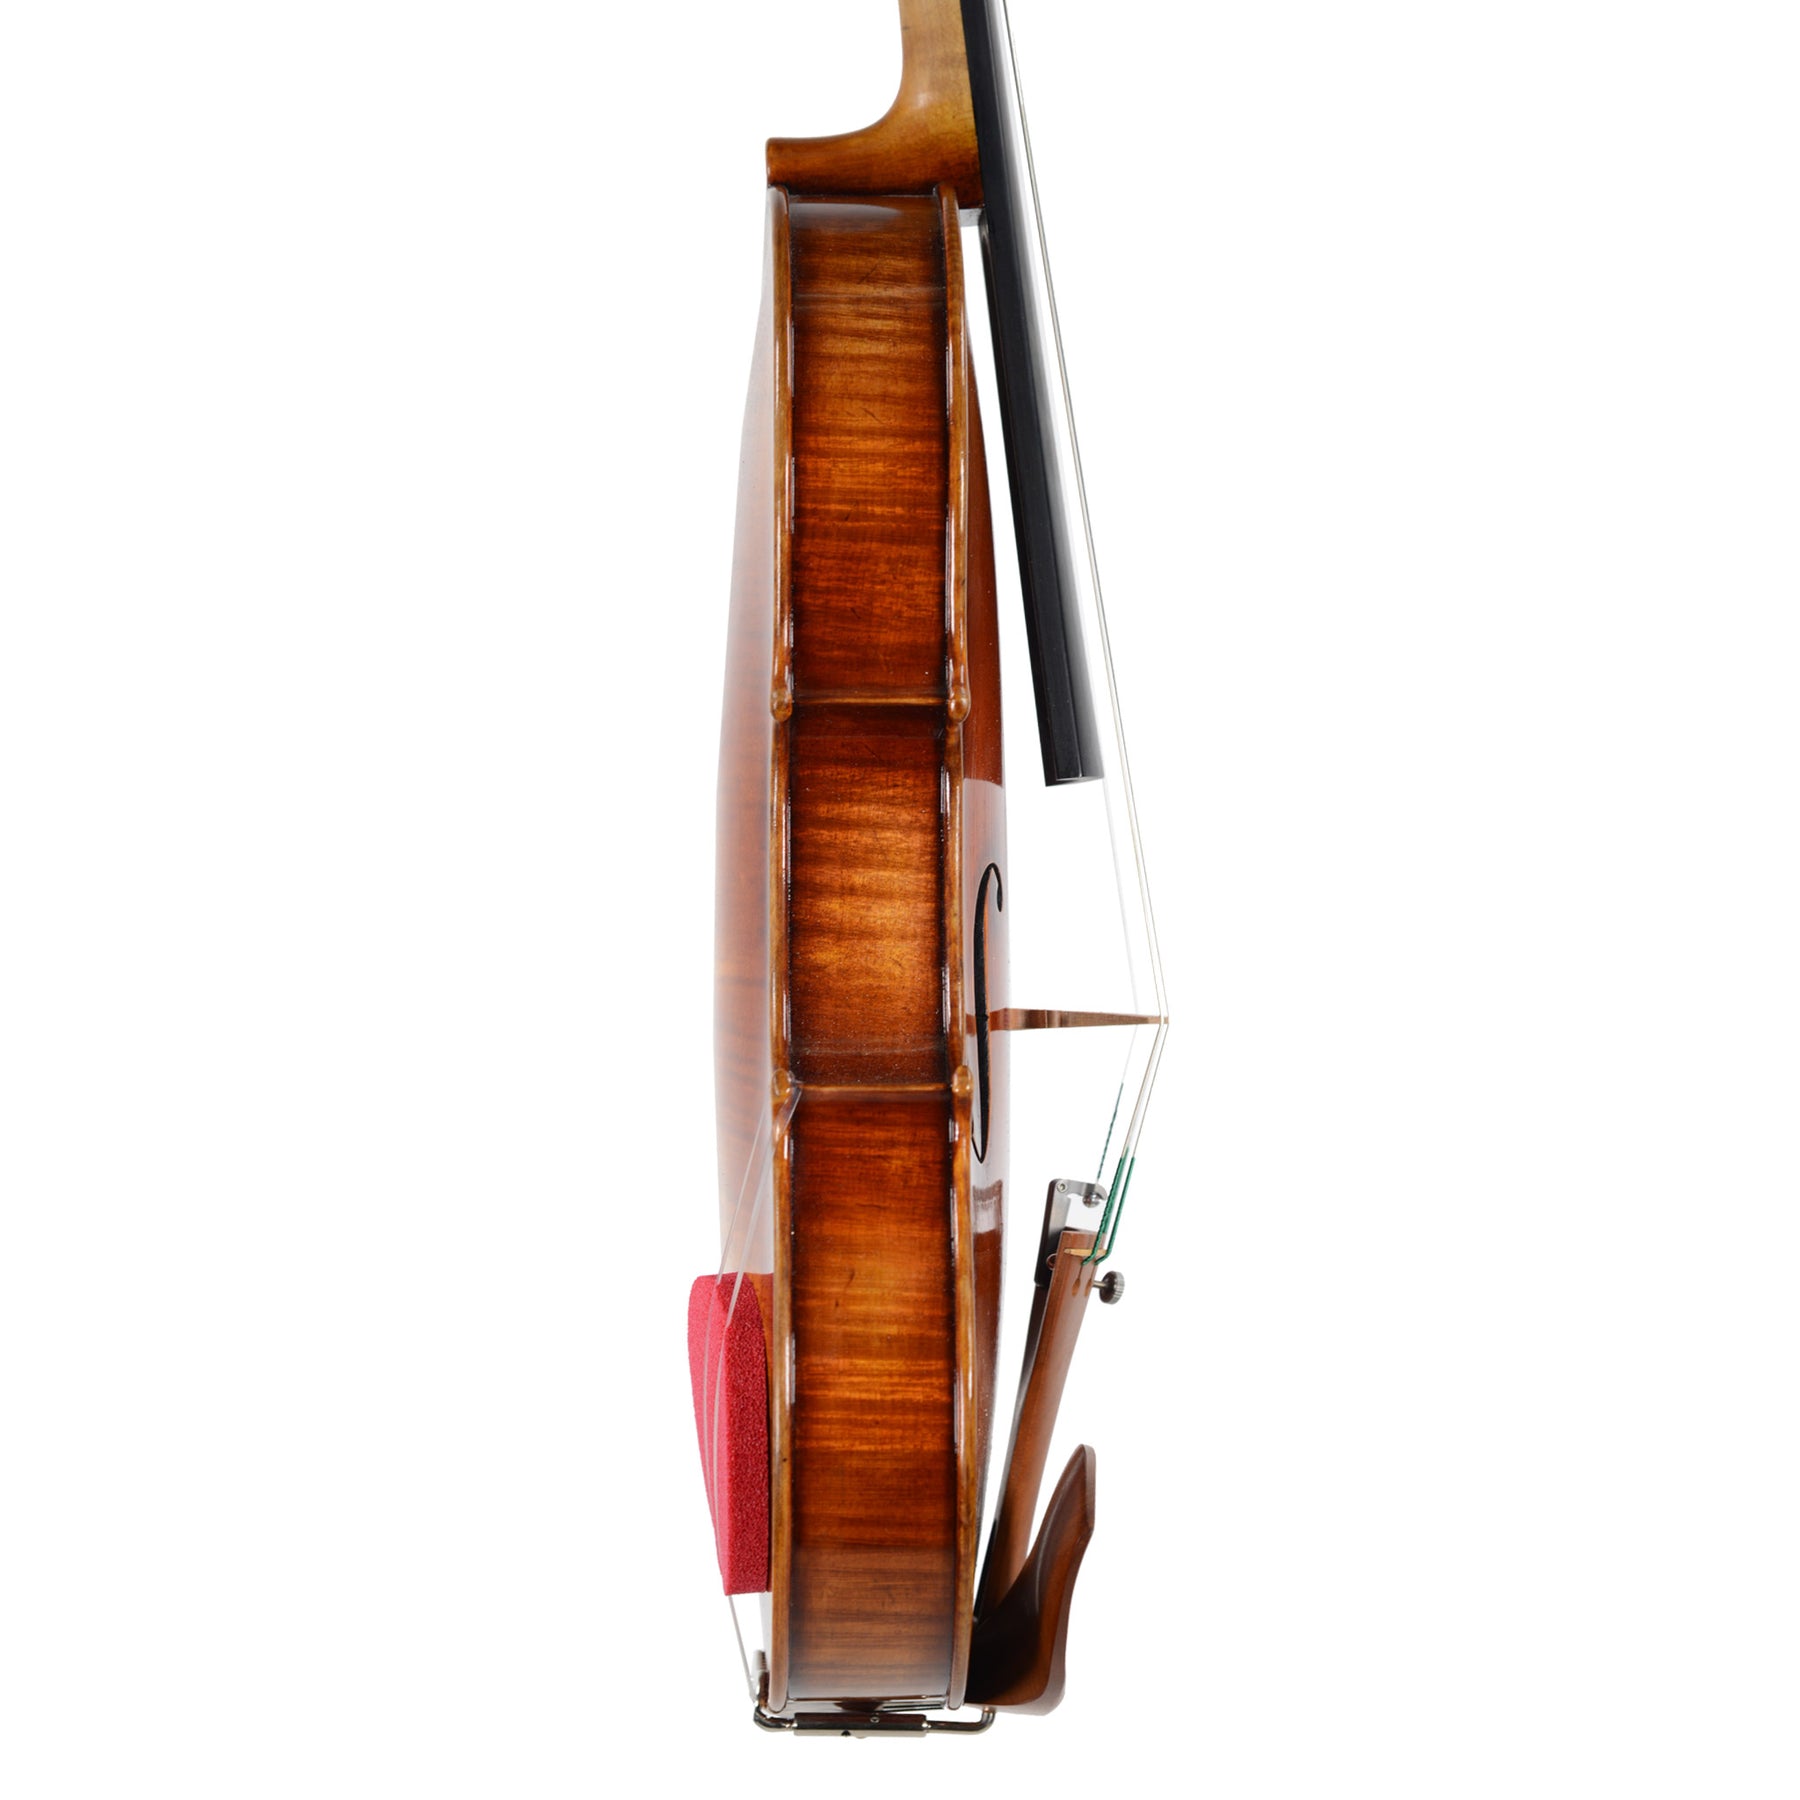 Red Sponge Shoulder Rest - Violin Accessories